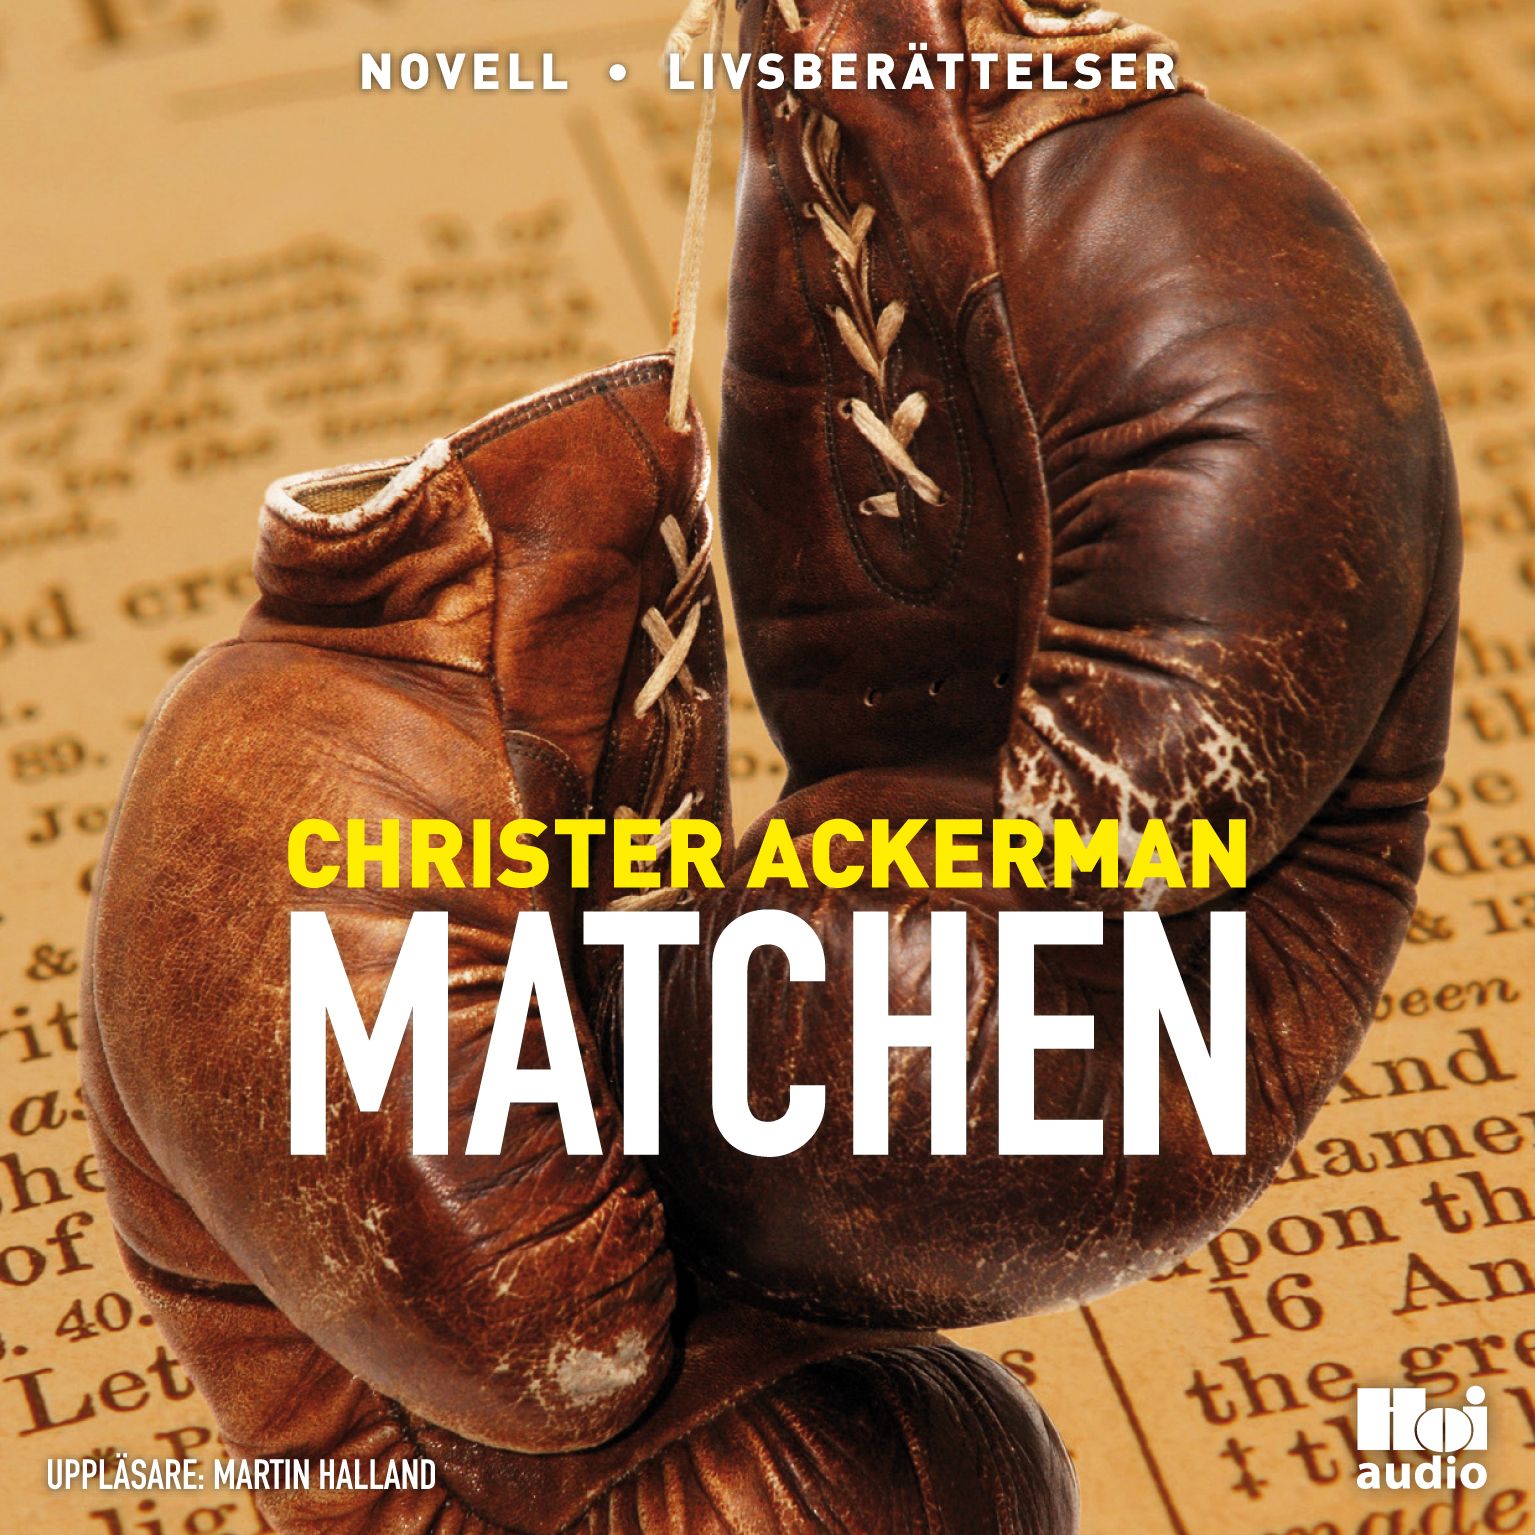 Matchen, ljudbok av Christer Ackerman